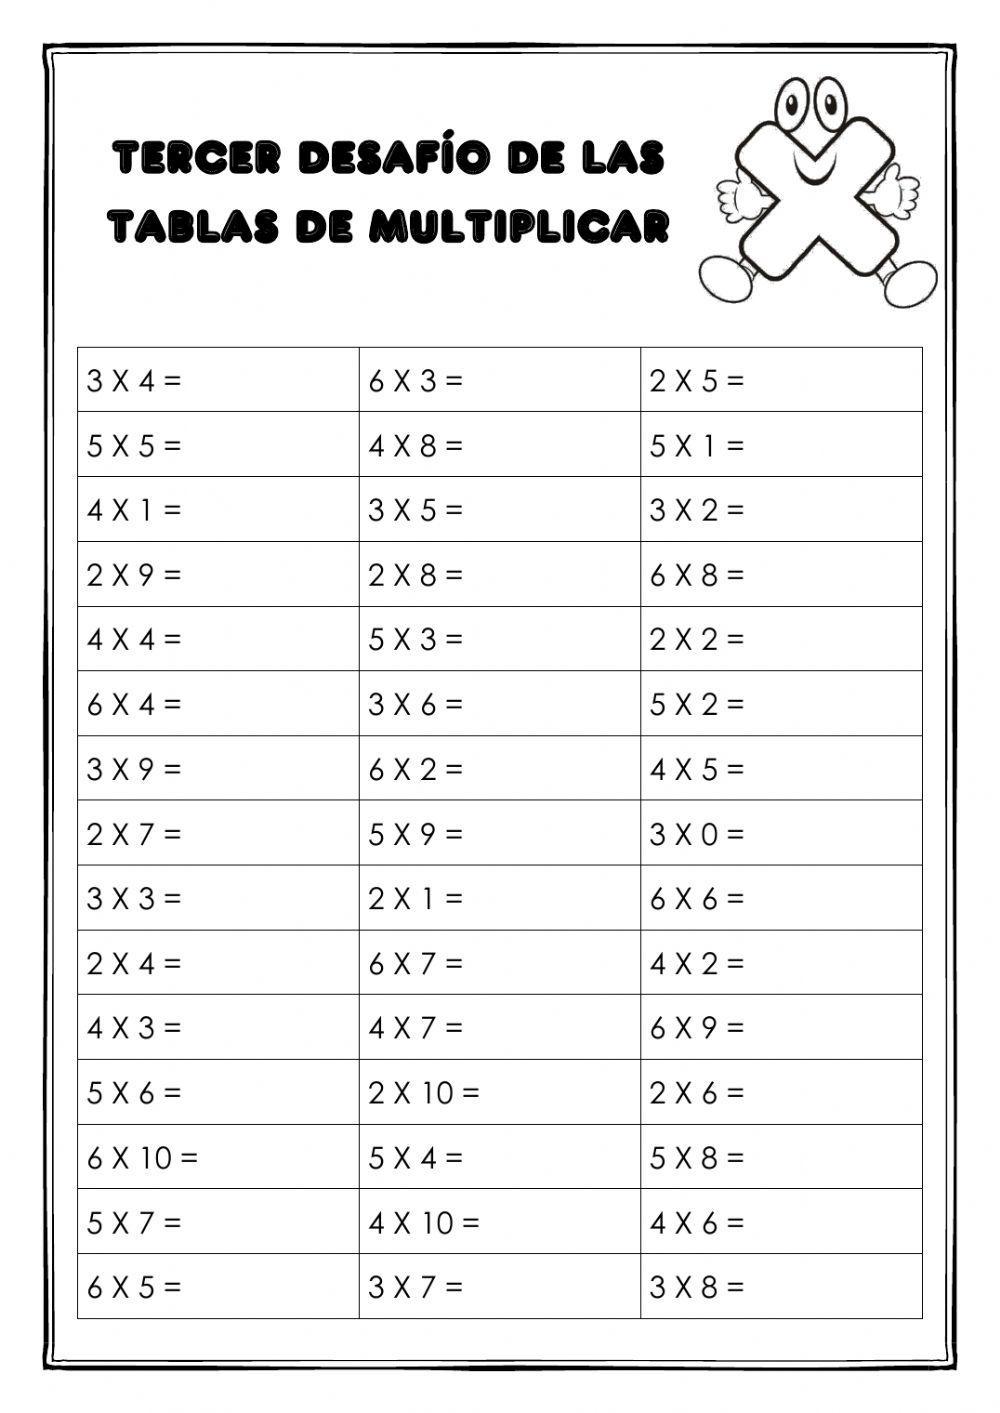 Desafío tablas de multiplicar